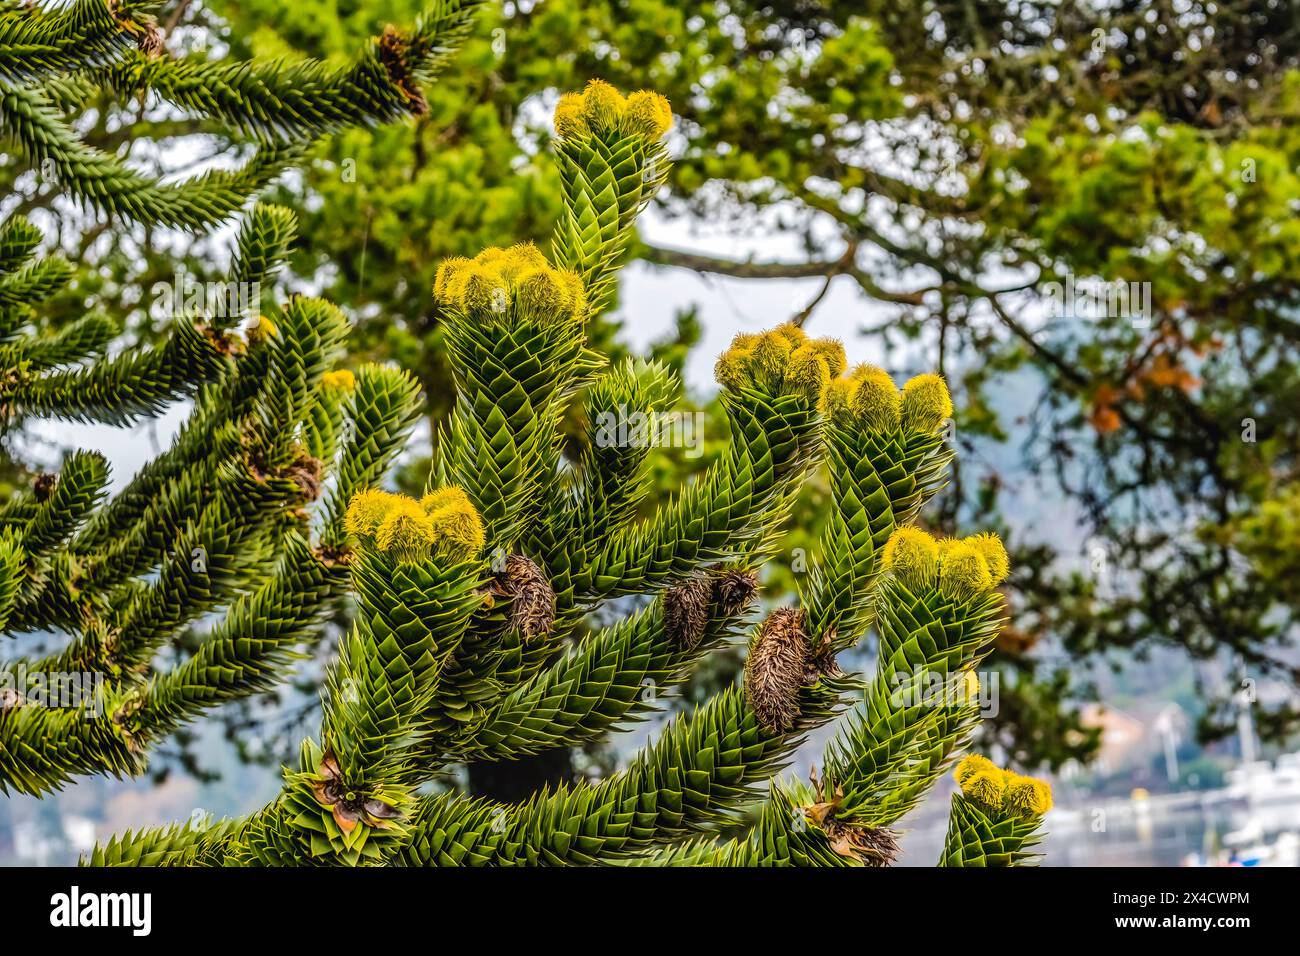 Affen Puzzle Baum blüht, Washington State. Aus Neukaledonien stammend. Stockfoto